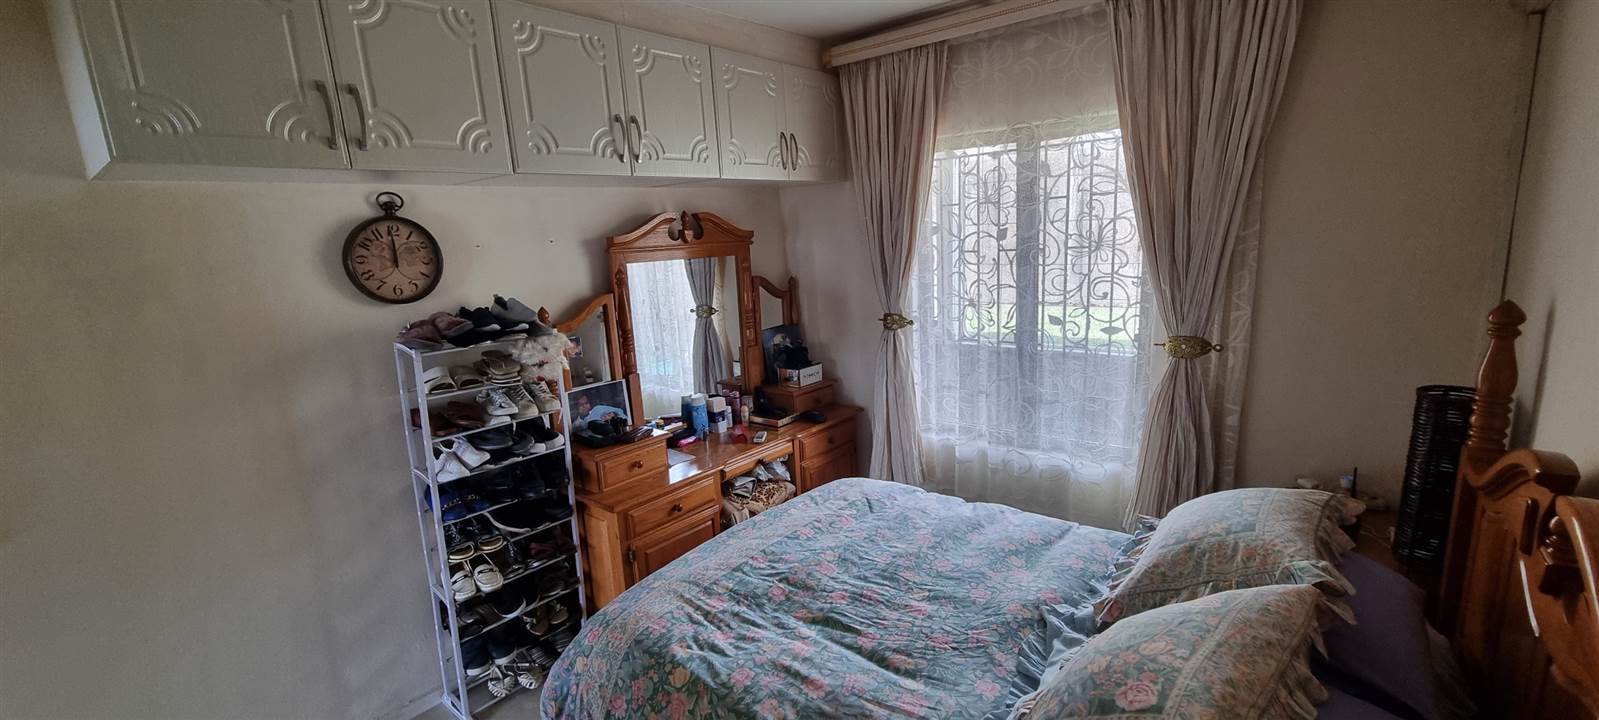 2 Bed Apartment in Pelham photo number 21